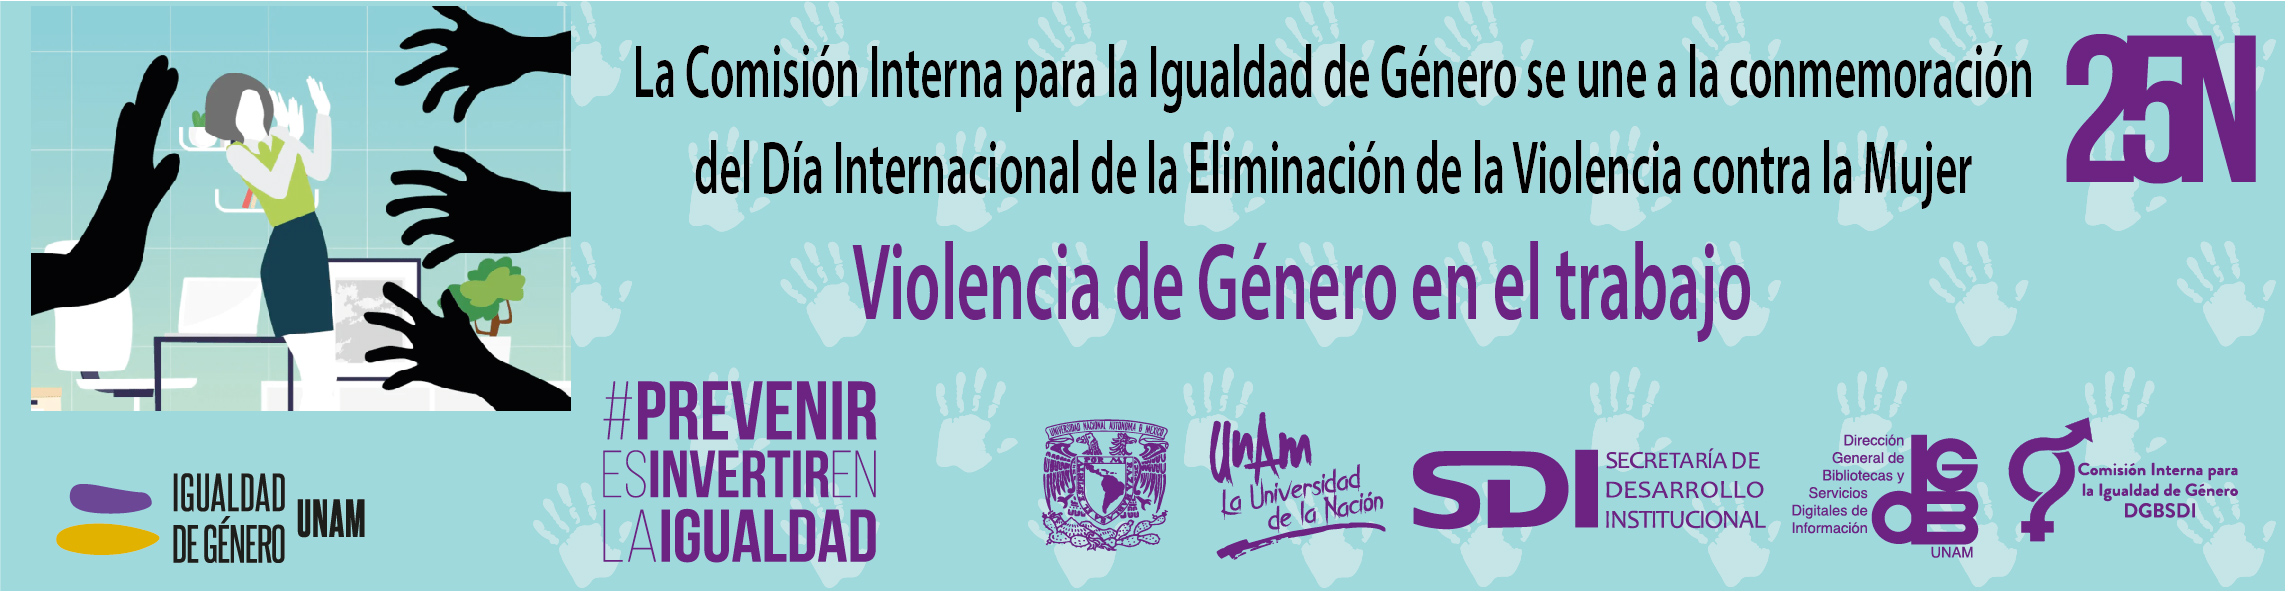 Violencia de género en el trabajo. 25 de noviembre. Día Internacional de la Eliminación de la Violencia contra las Mujeres